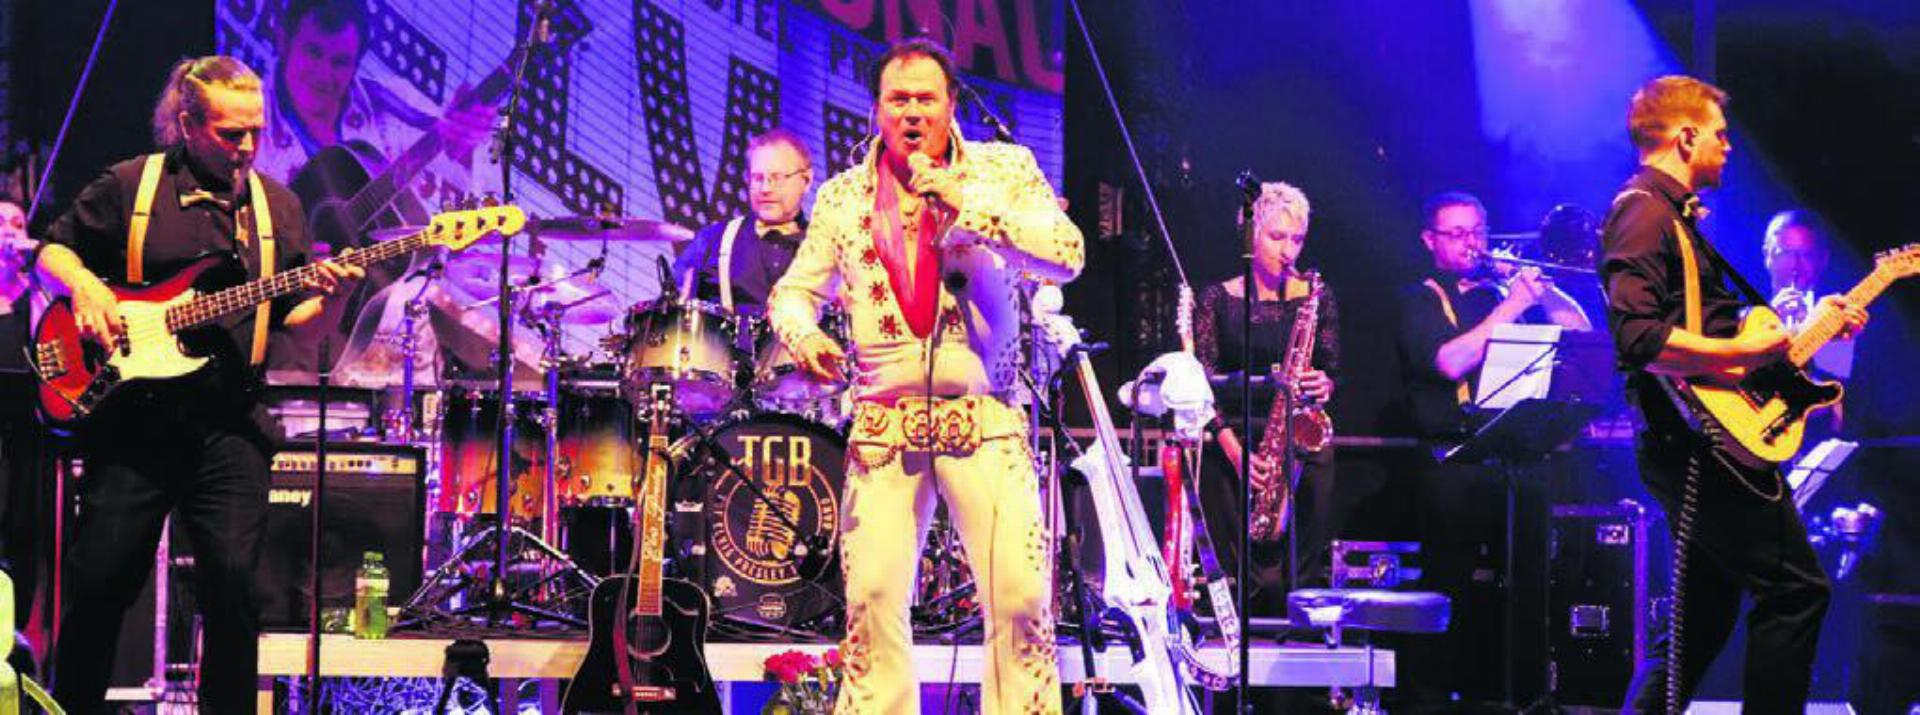 «The Groth Band» bringt Elvis-Lieder nach Boswil. Bild: zg